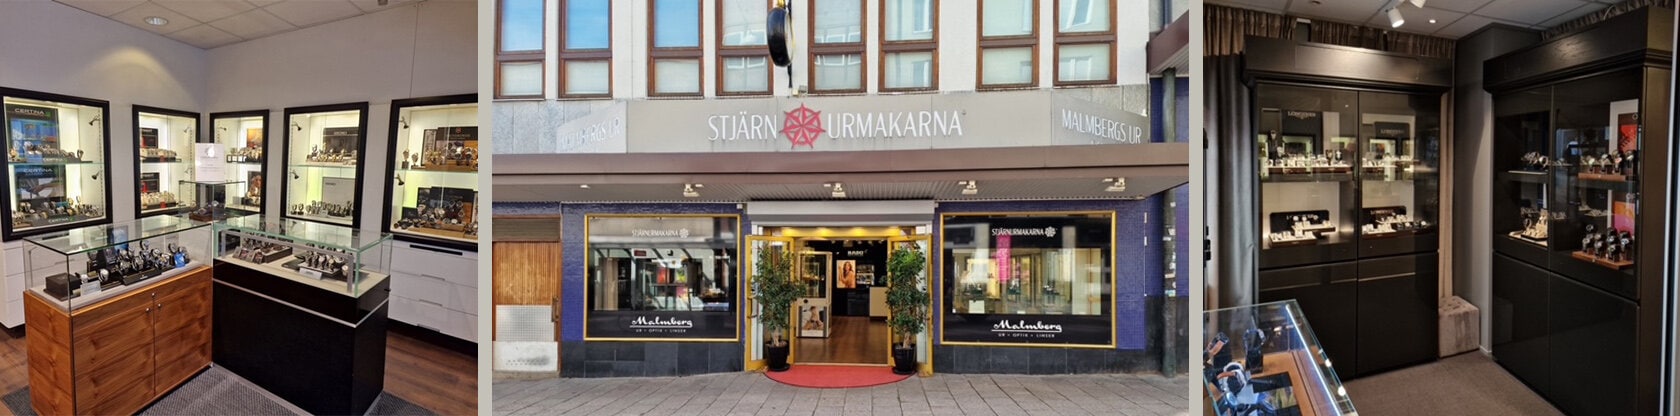 Stjärnurmakarna Malmbergs Ur Linköping